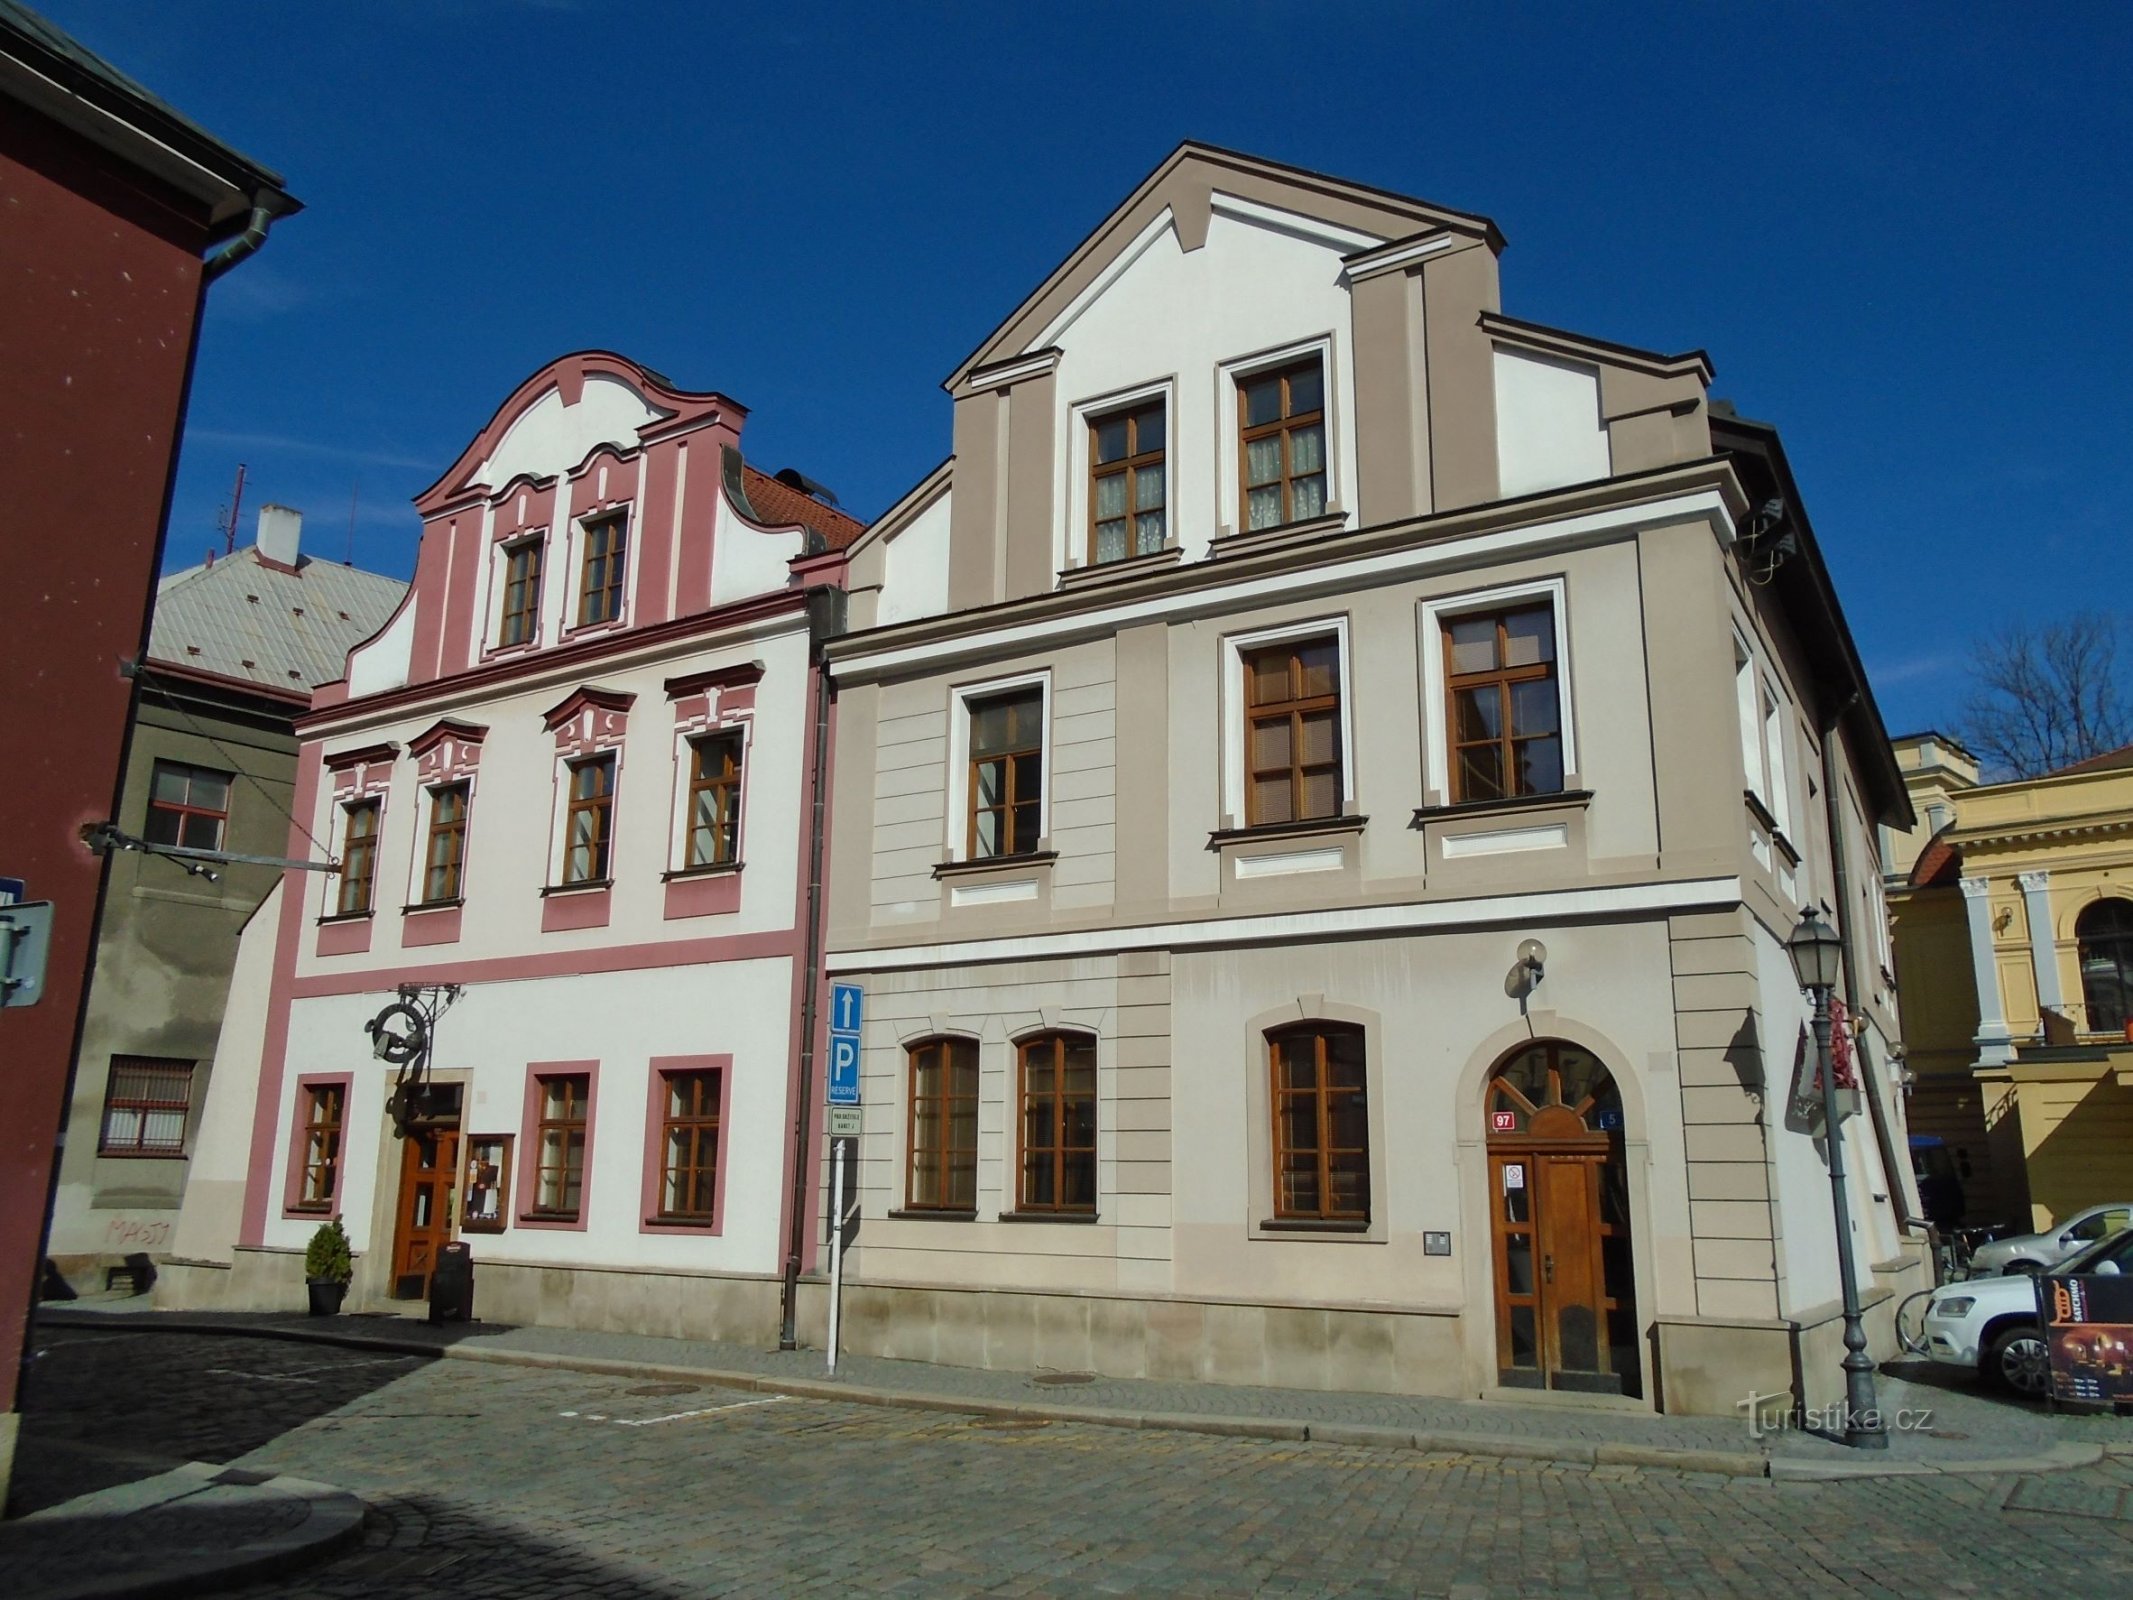 Lang Nr. 96-97 (Hradec Králové, 5.4.2018)